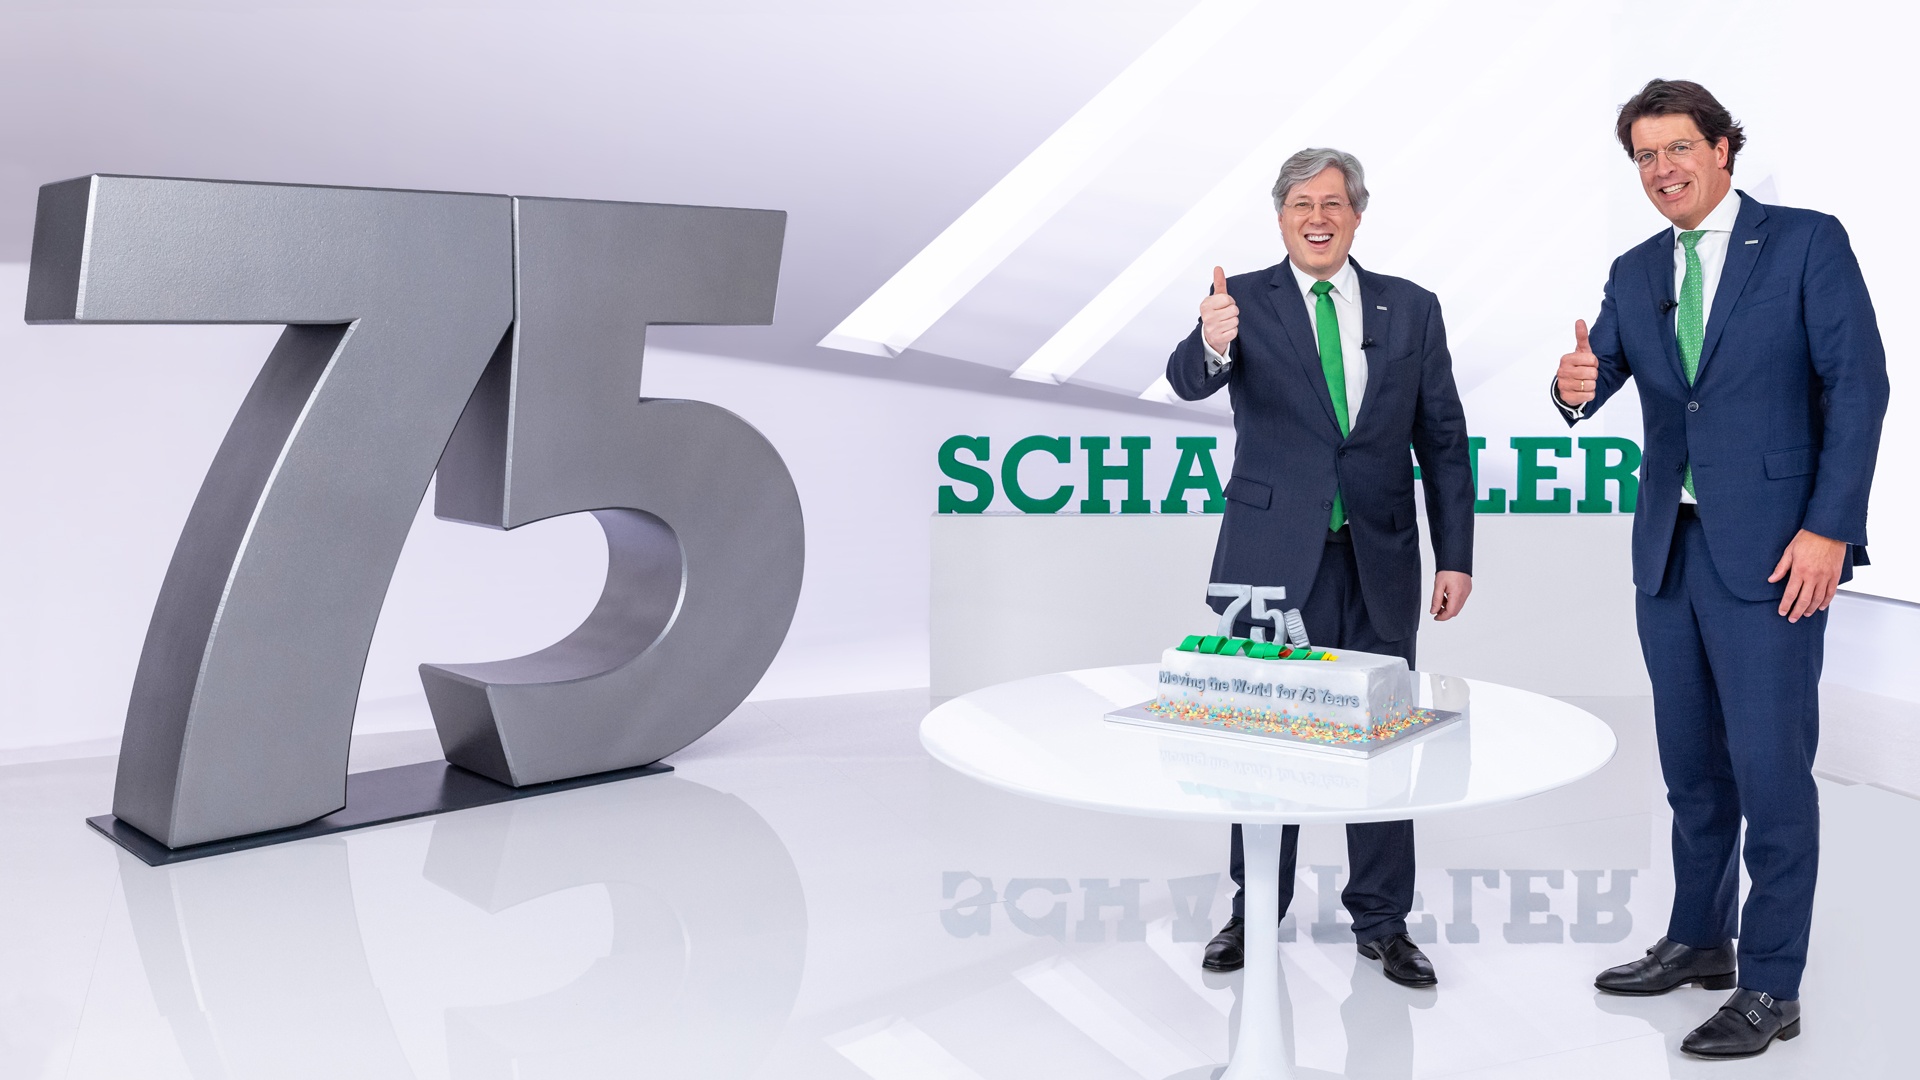 Schaeffler 75 Years